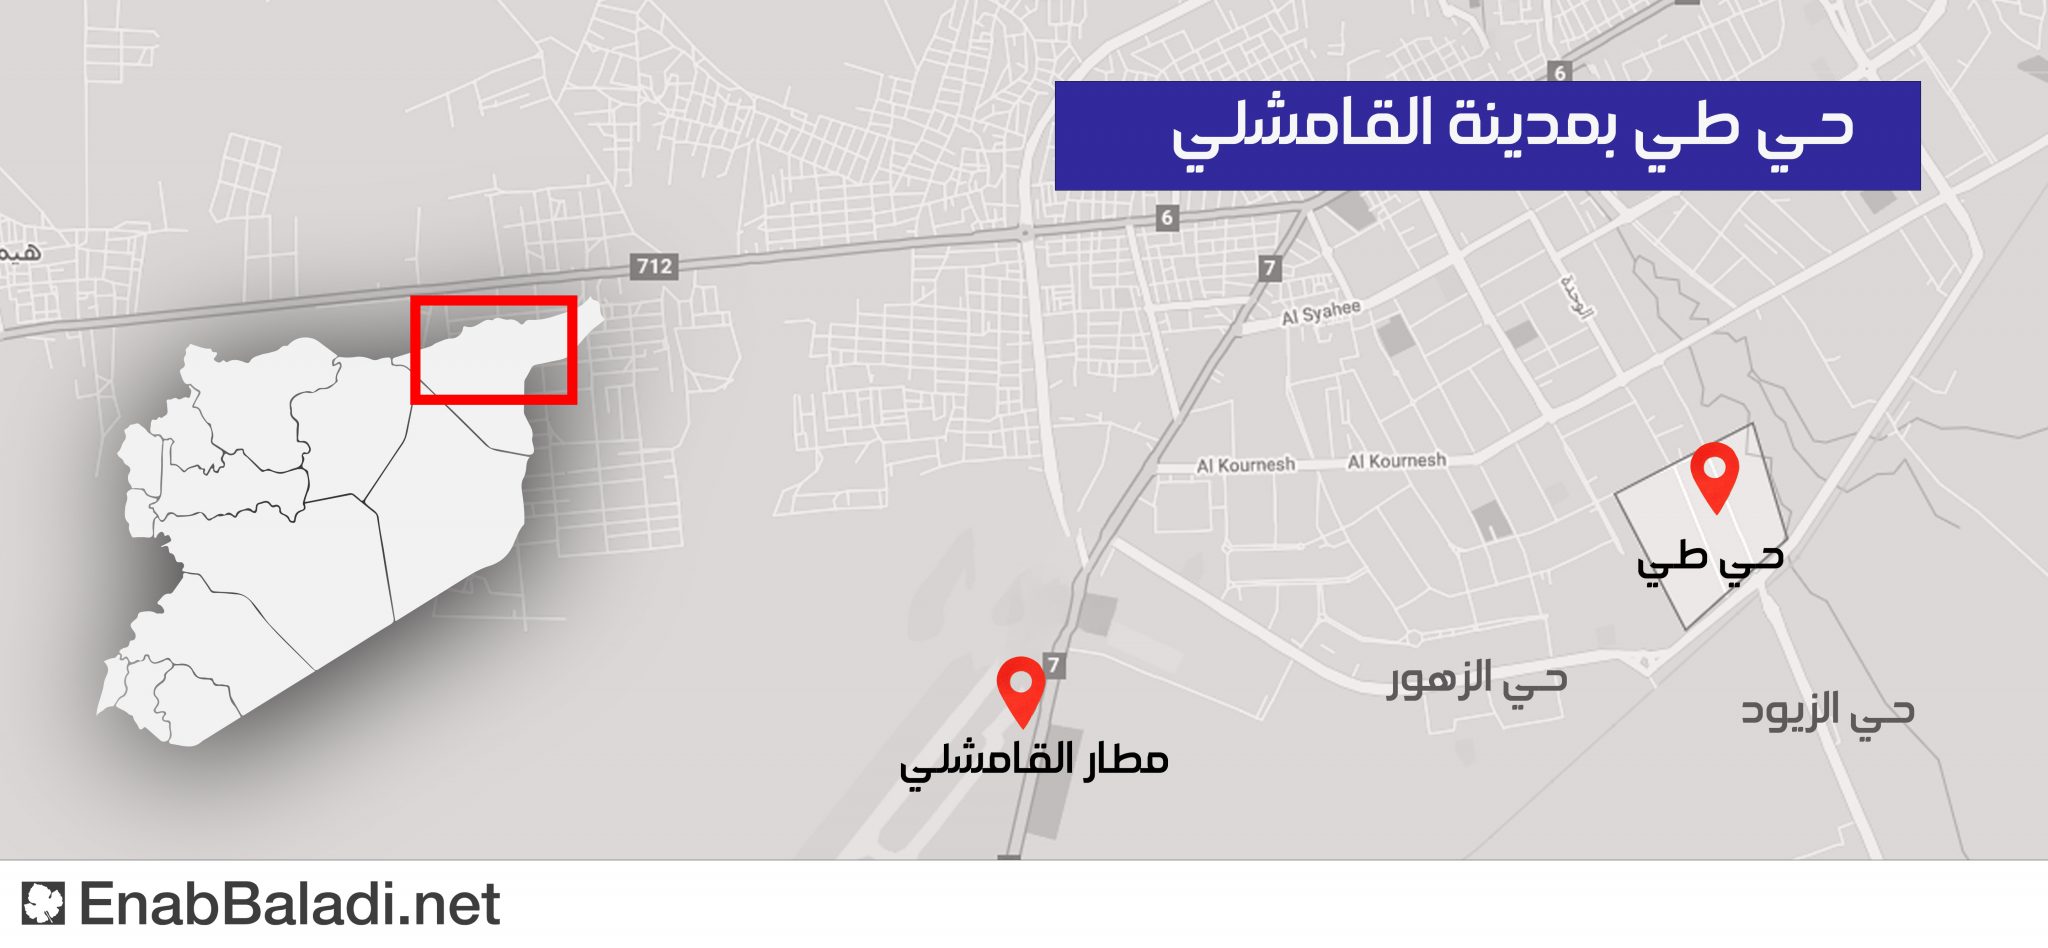 خريطة توضح أماكن الاشتباكات بين الأسايش وقوات الدفاع الوطني (تصميم عنب بلدي)